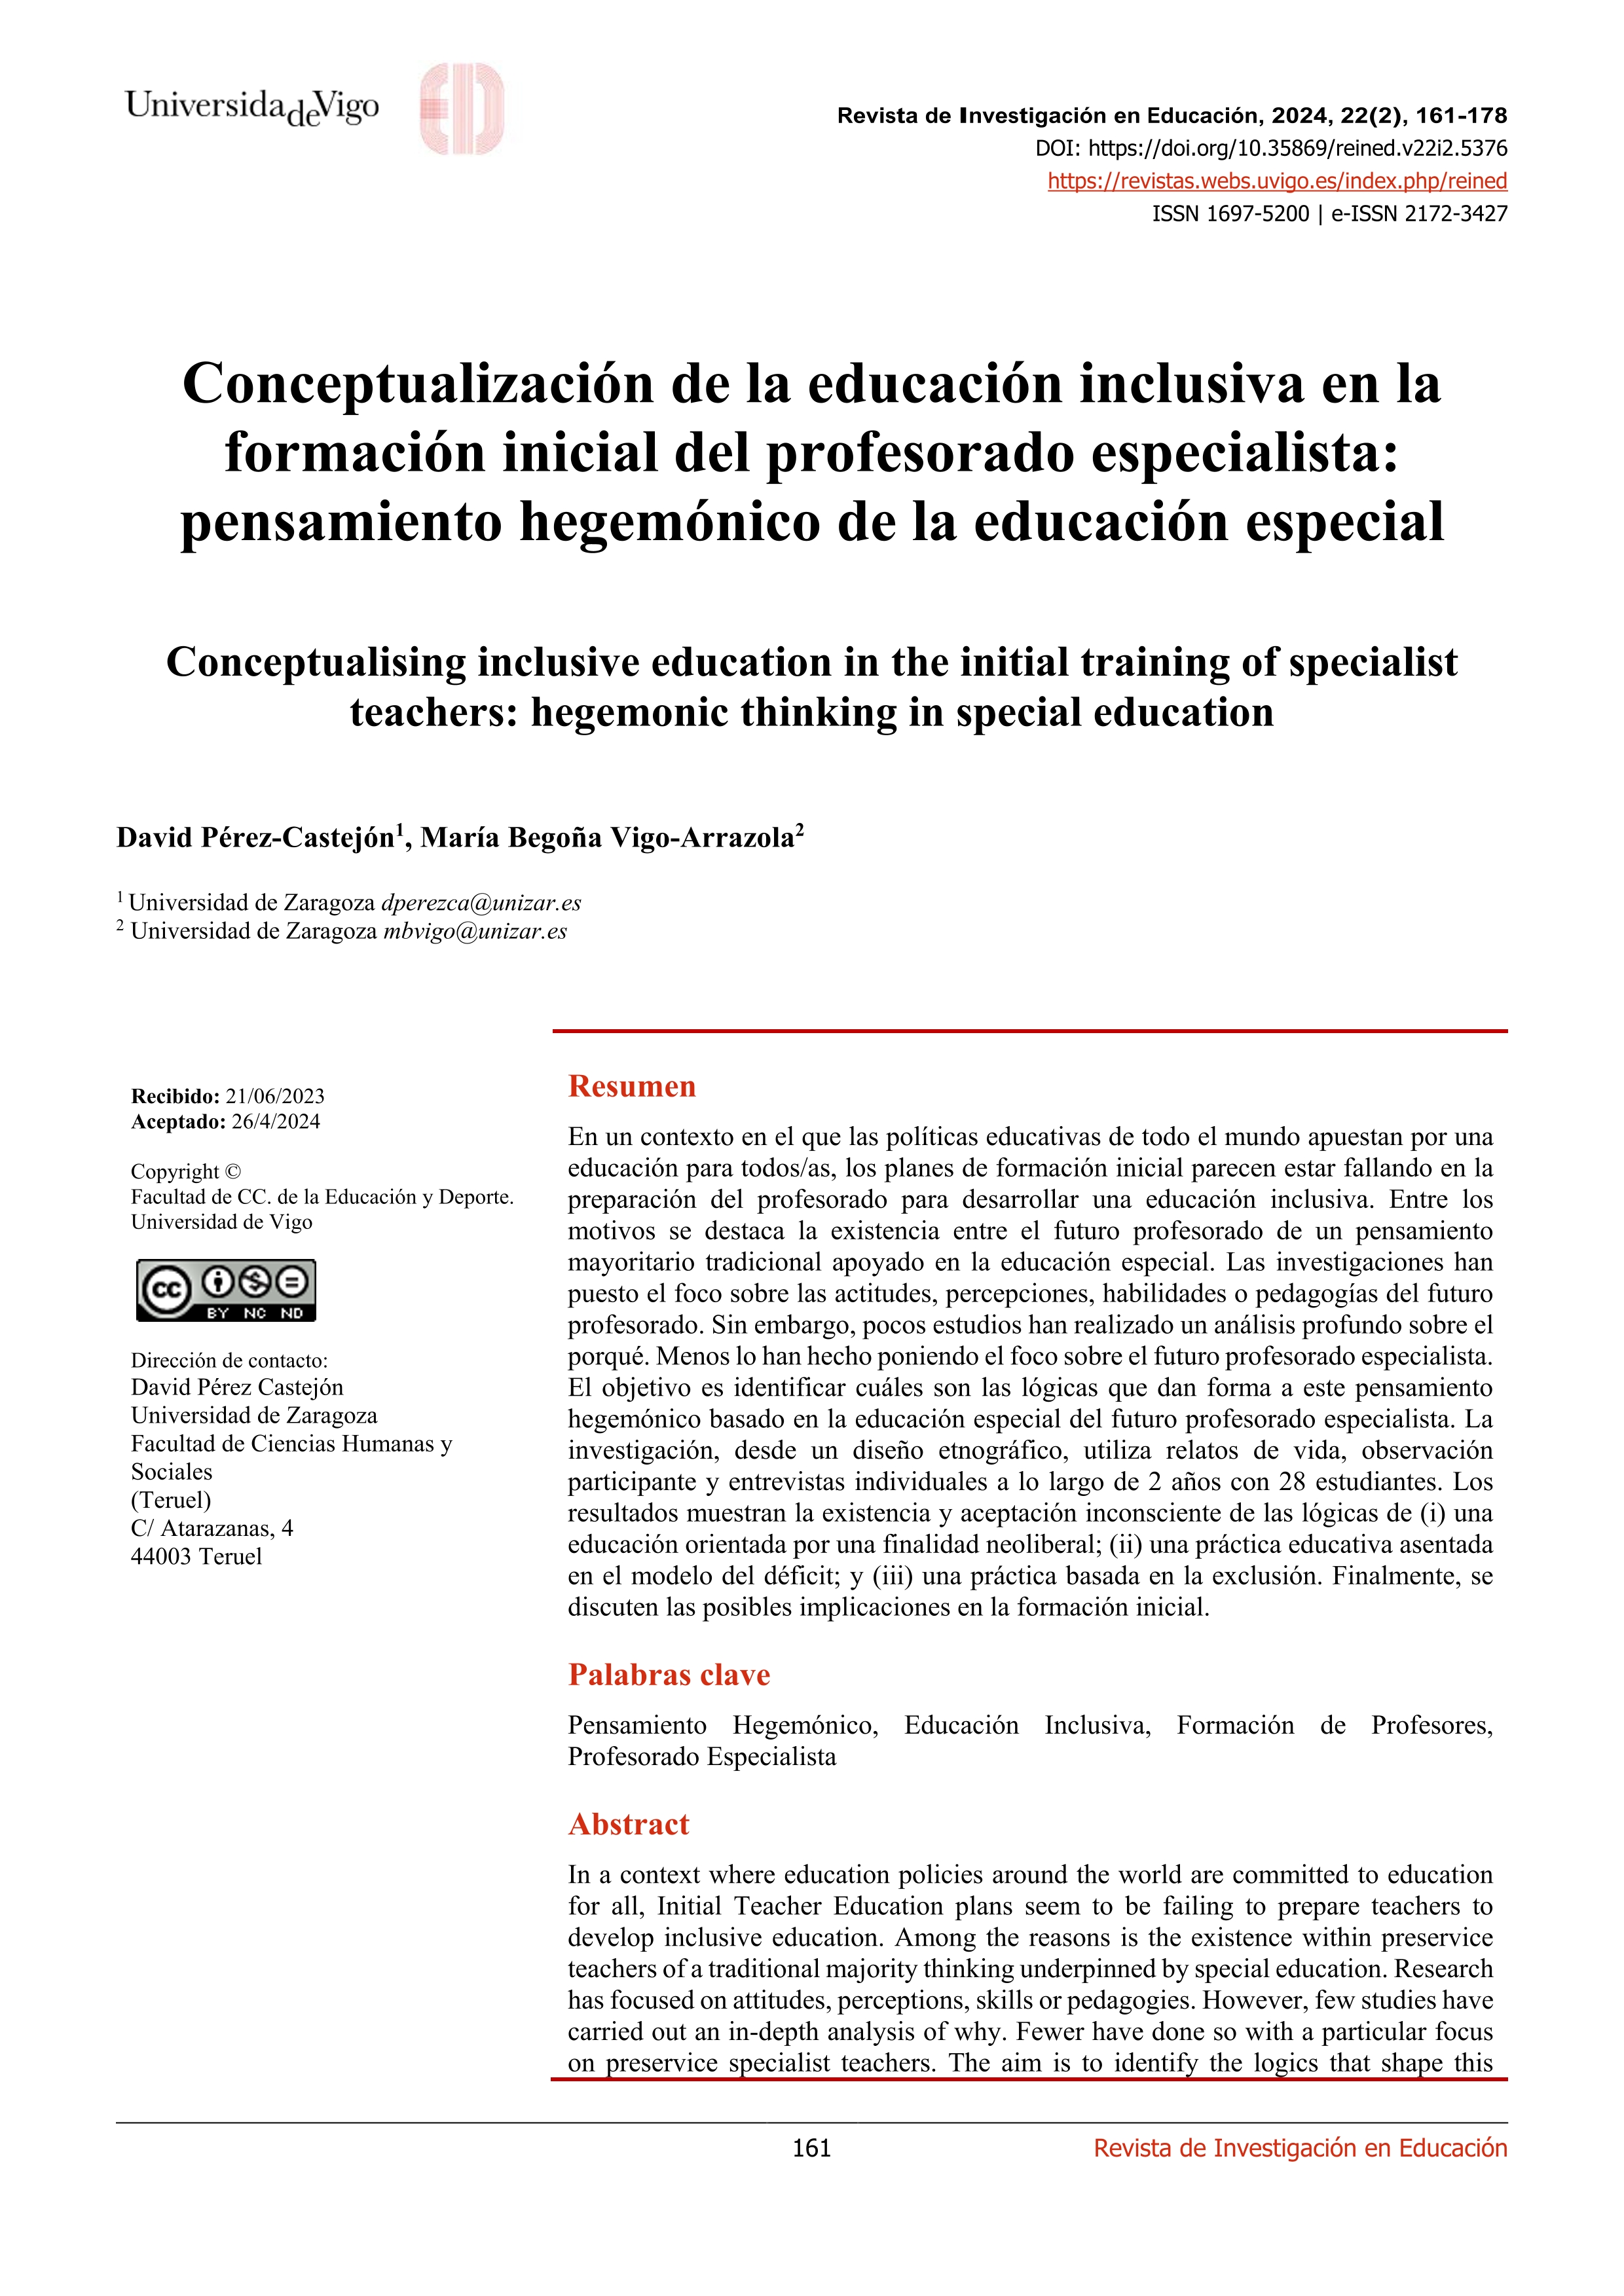 Conceptualización de la educación inclusiva en la formación inicial del profesorado especialista: pensamiento hegemónico de la educación especial